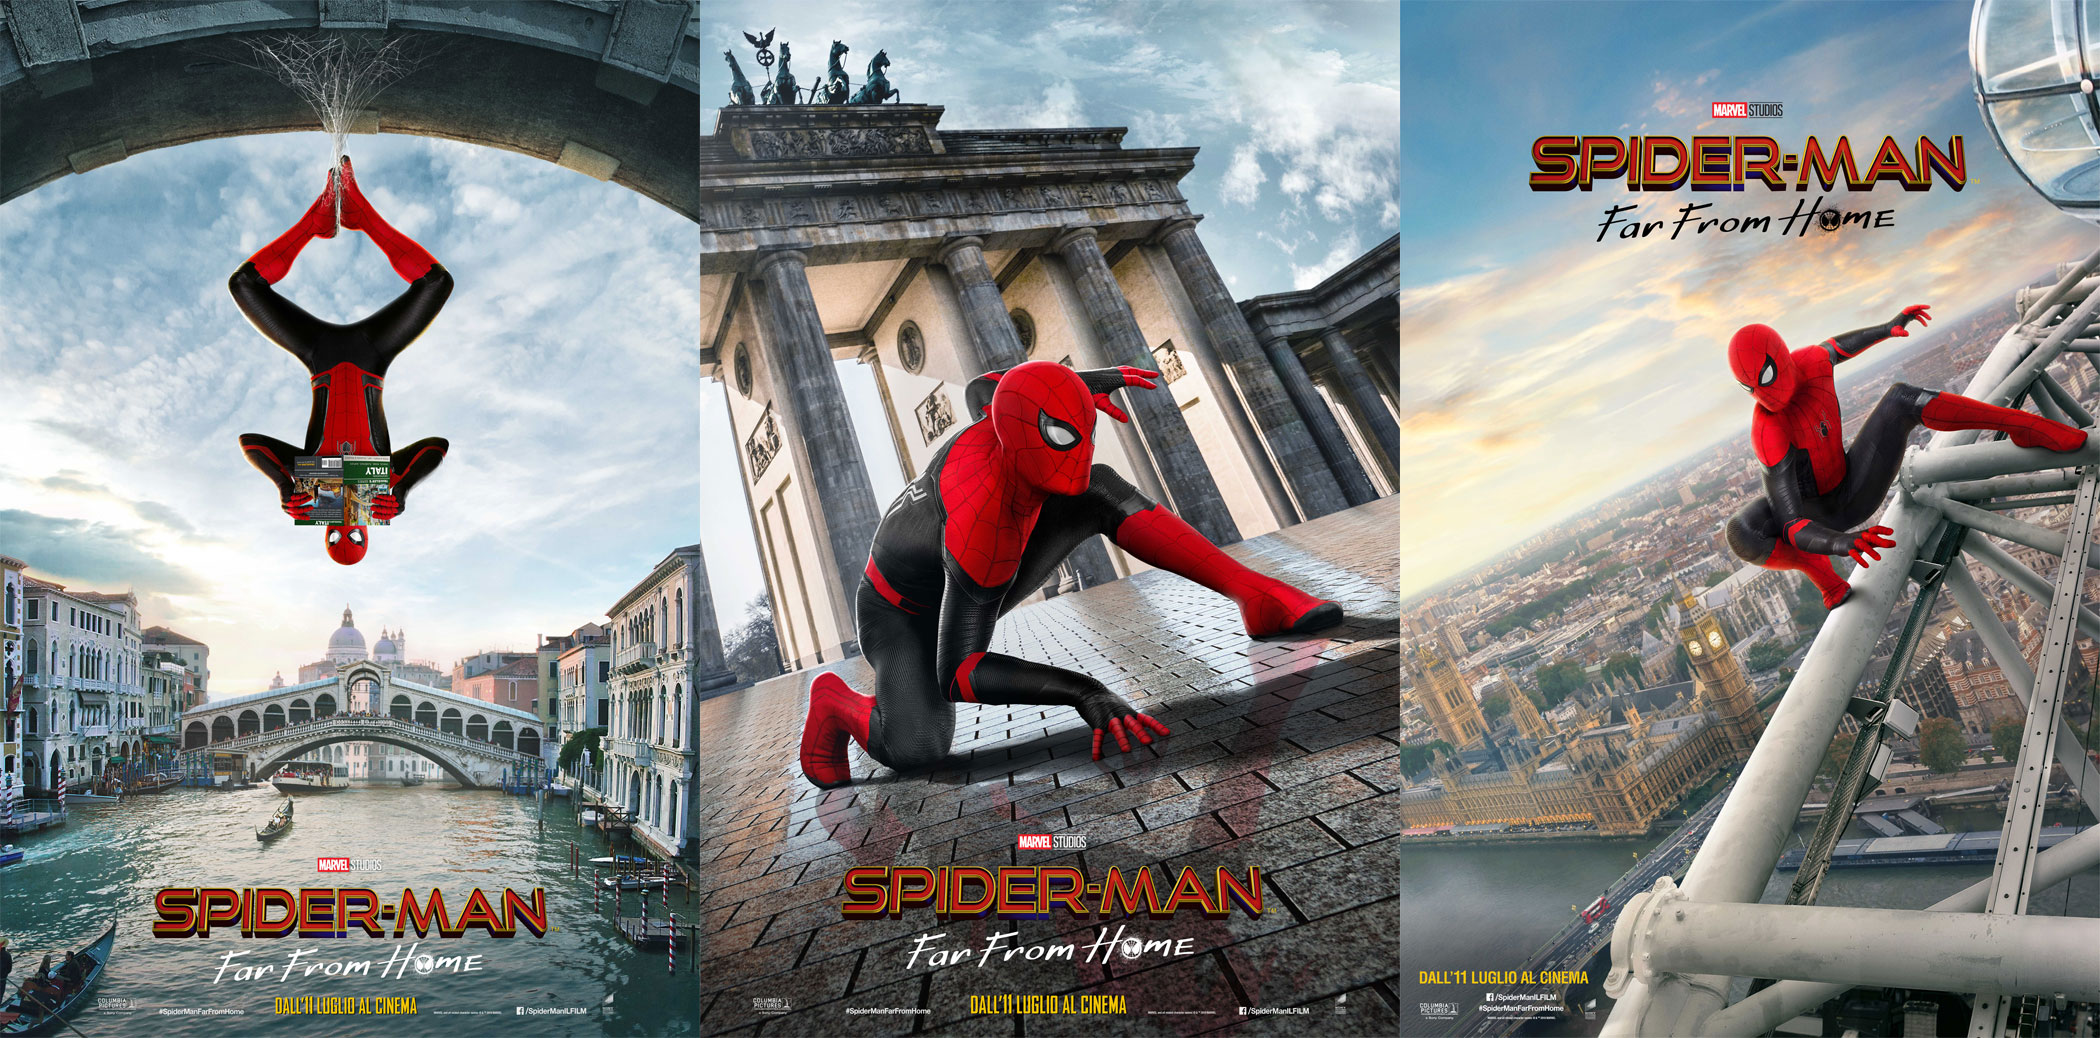 Spider-Man Far From Home, i poster internazionali con Venezia, Berlino e Londra